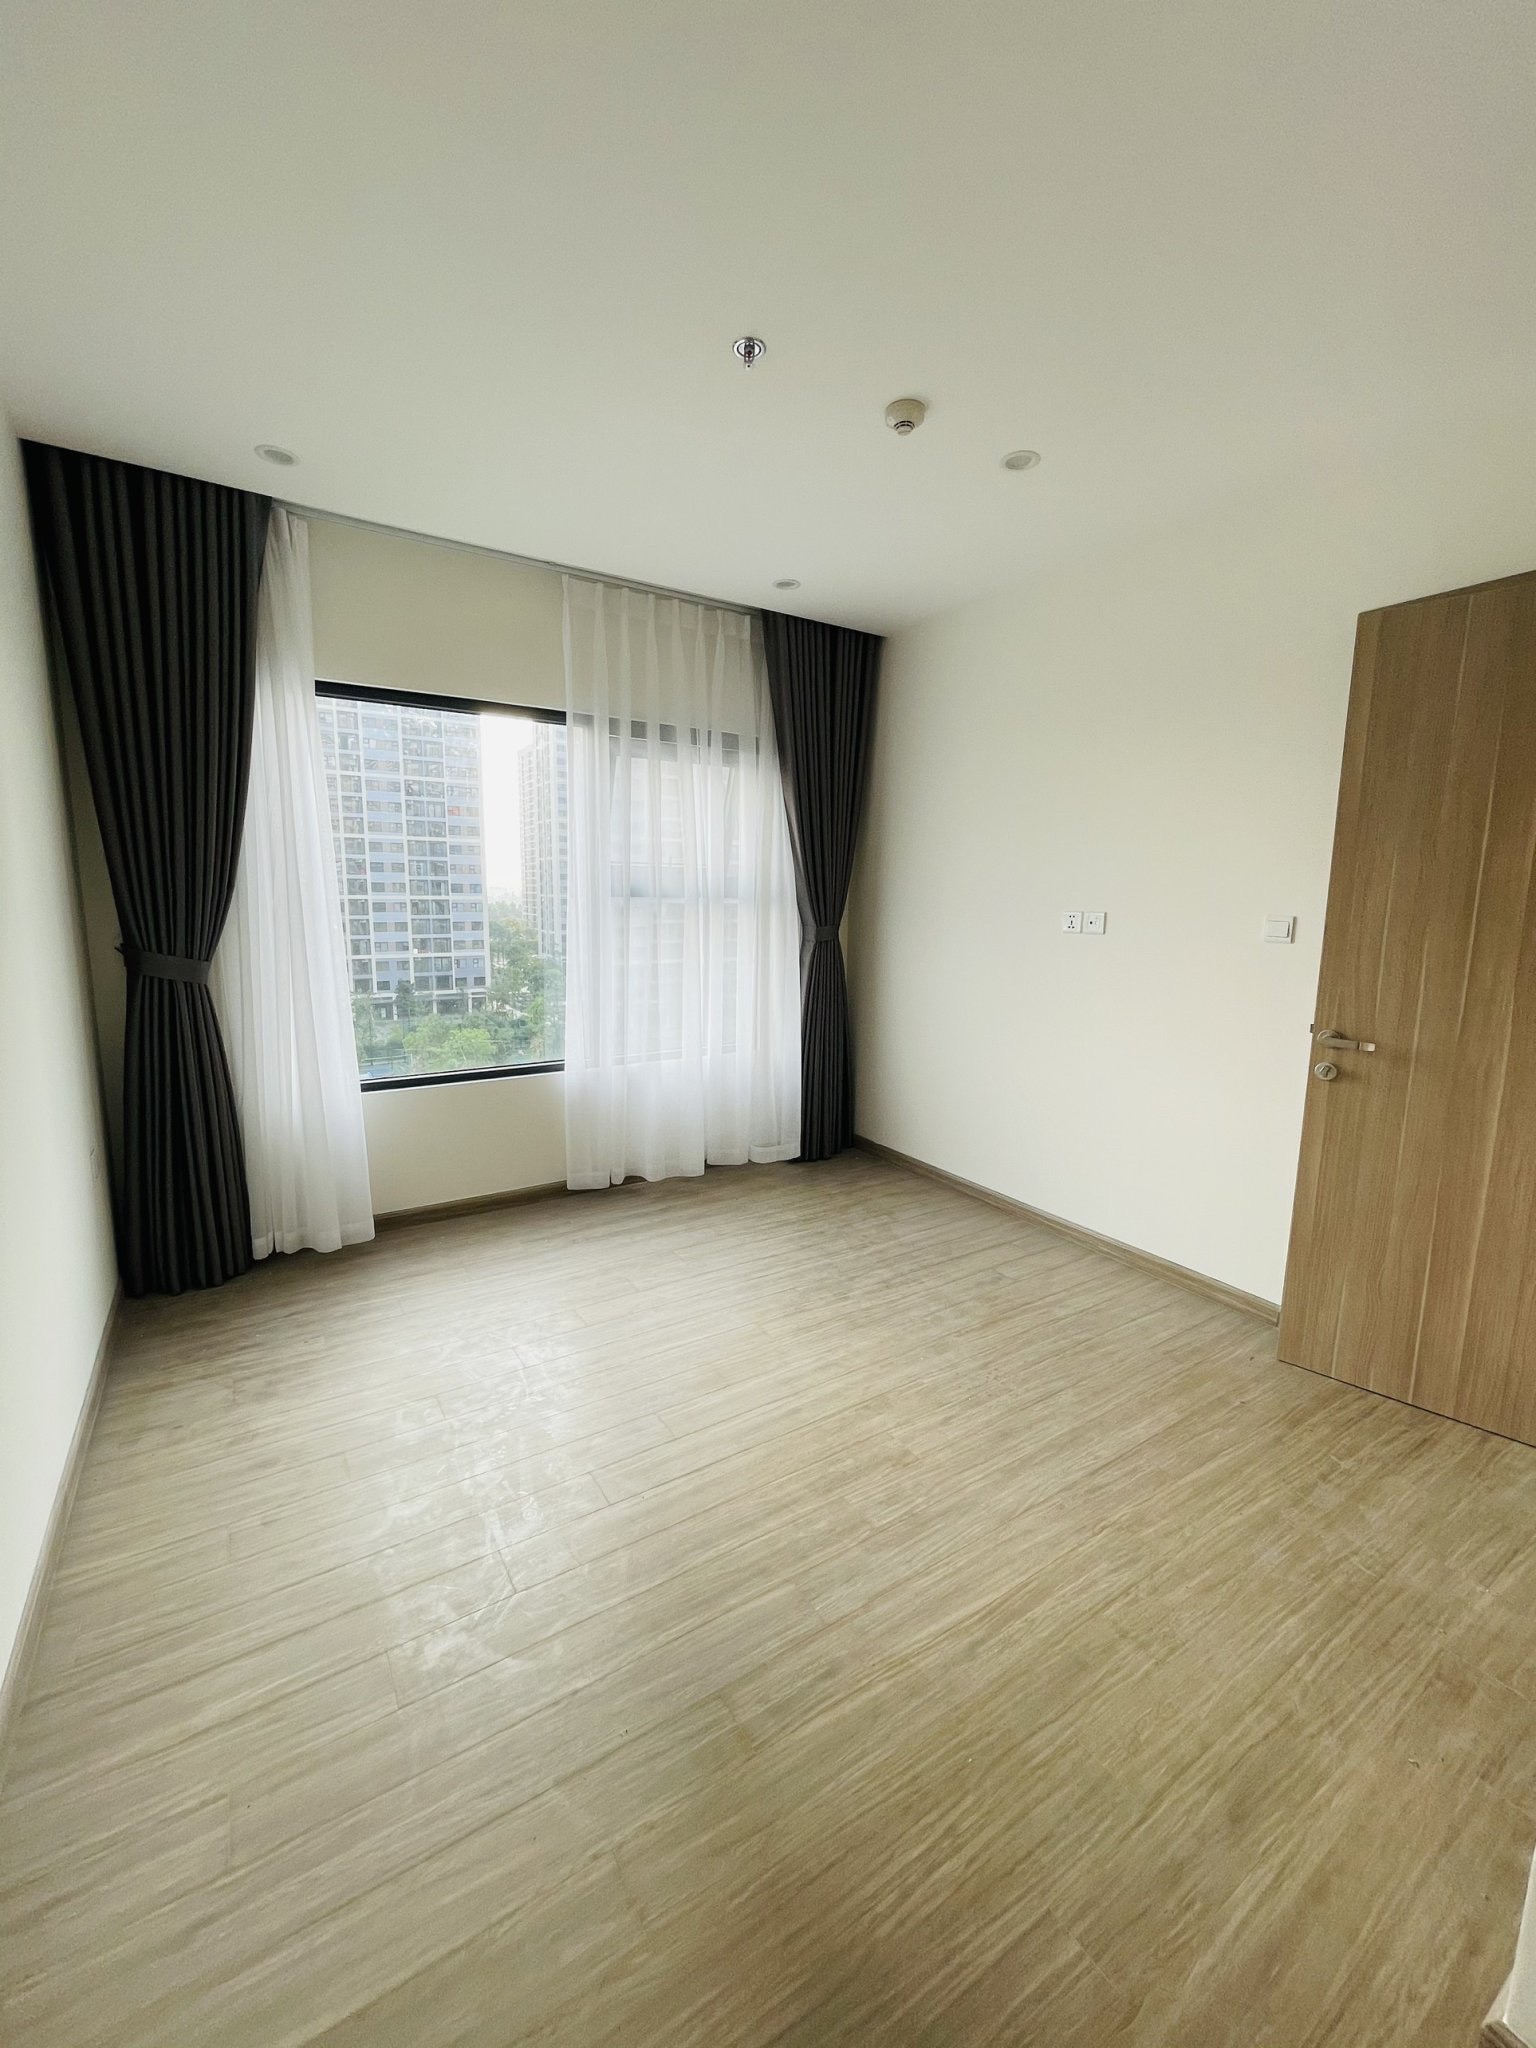 Cho thuê căn hộ mới 82m2 Vinhomes Grand Park Q9 nội thất cơ bản tầng 7 - Ảnh 6